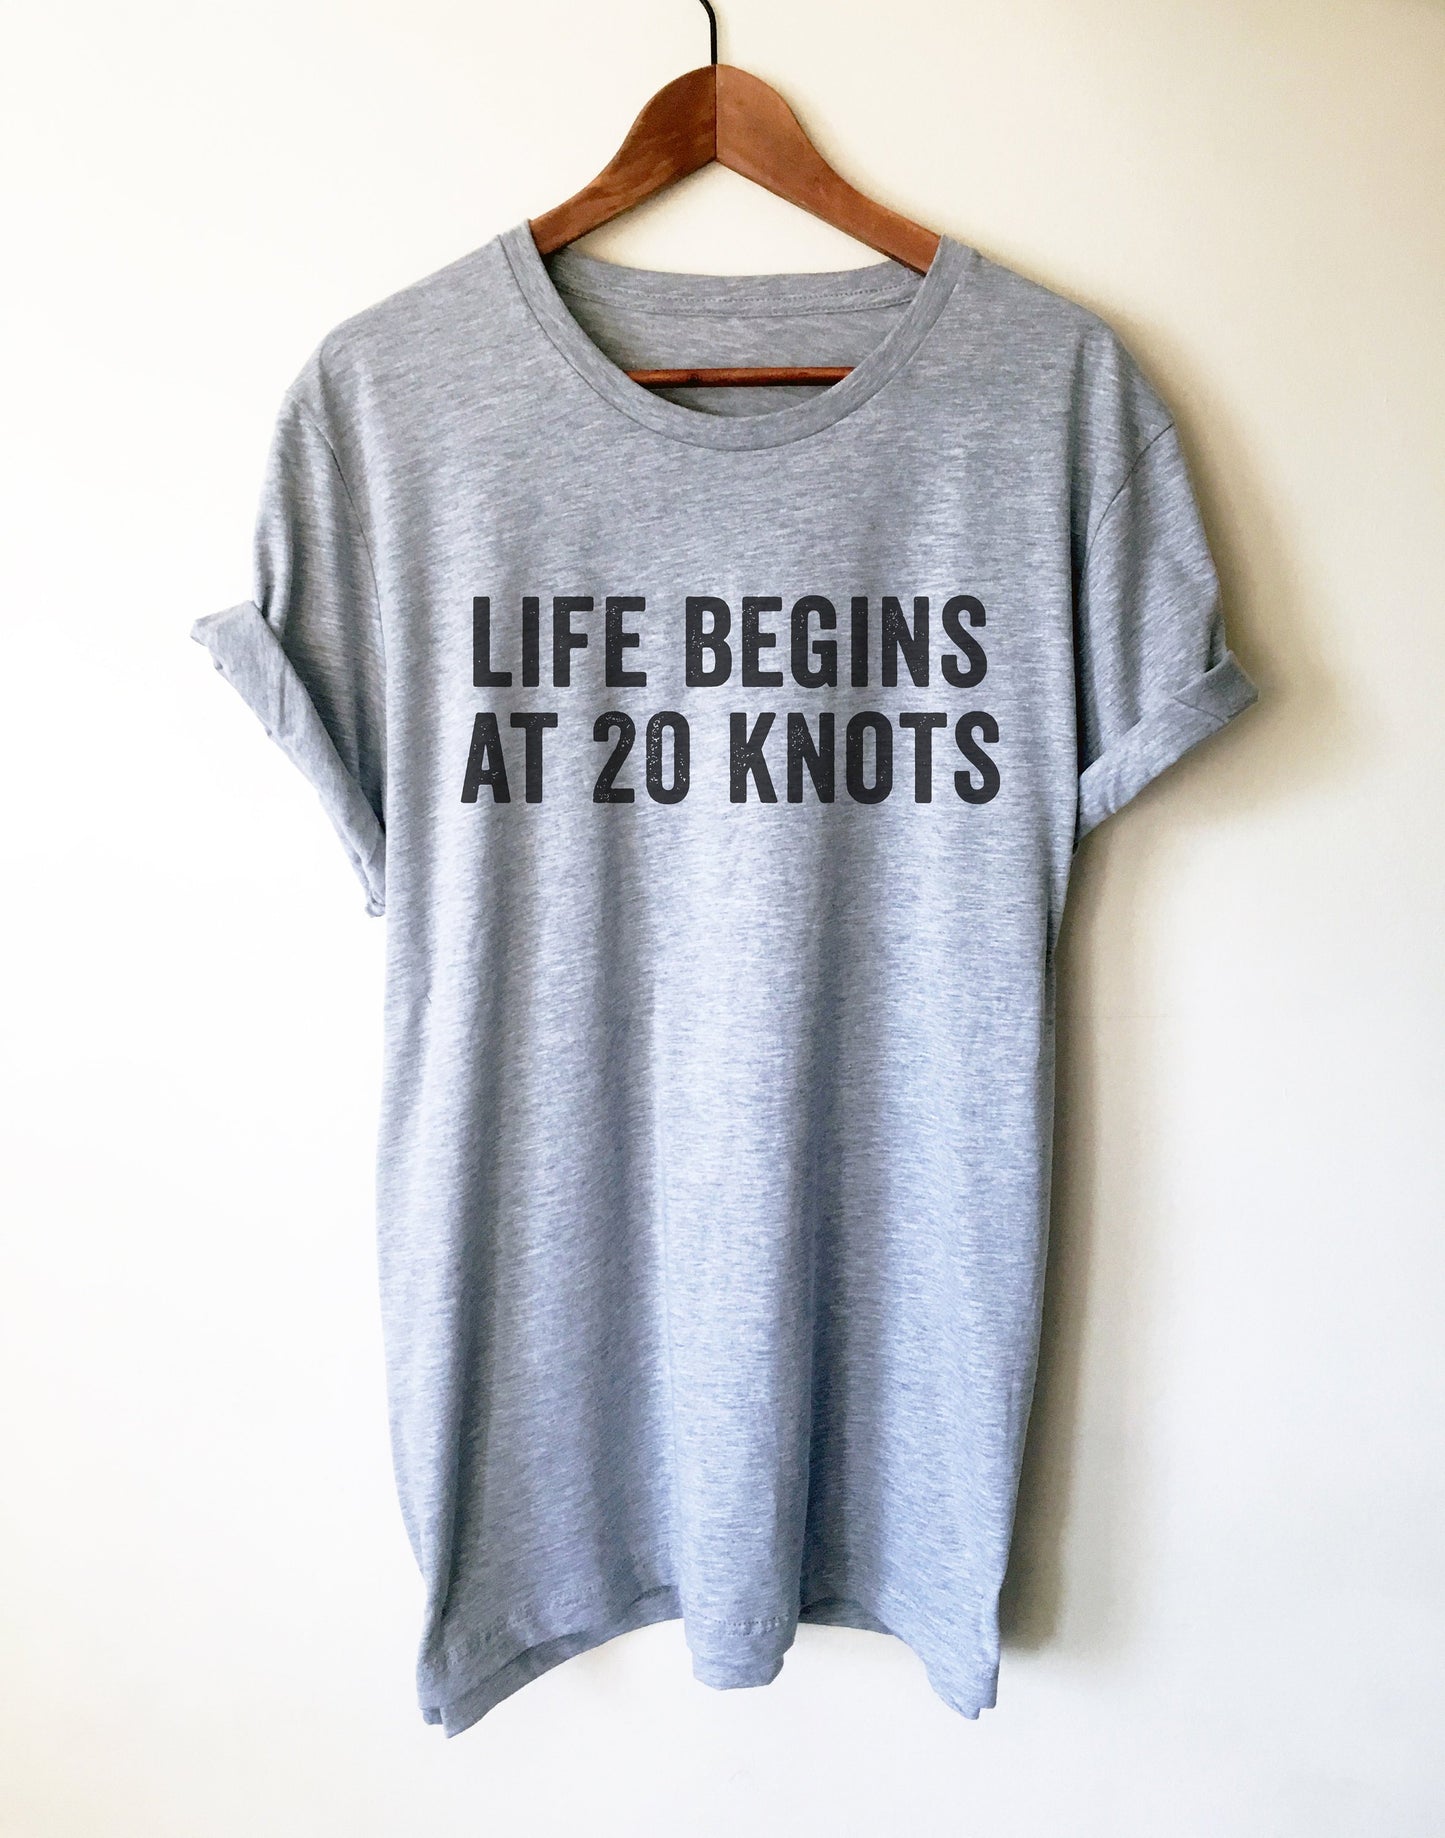 Life Begins At 20 Knots Unisex Shirt - Kitesurf Shirt, Kitesurf Gift, Kite Surf Shirt, Kite Surf Gift, Kite Shirt, Beach Shirt